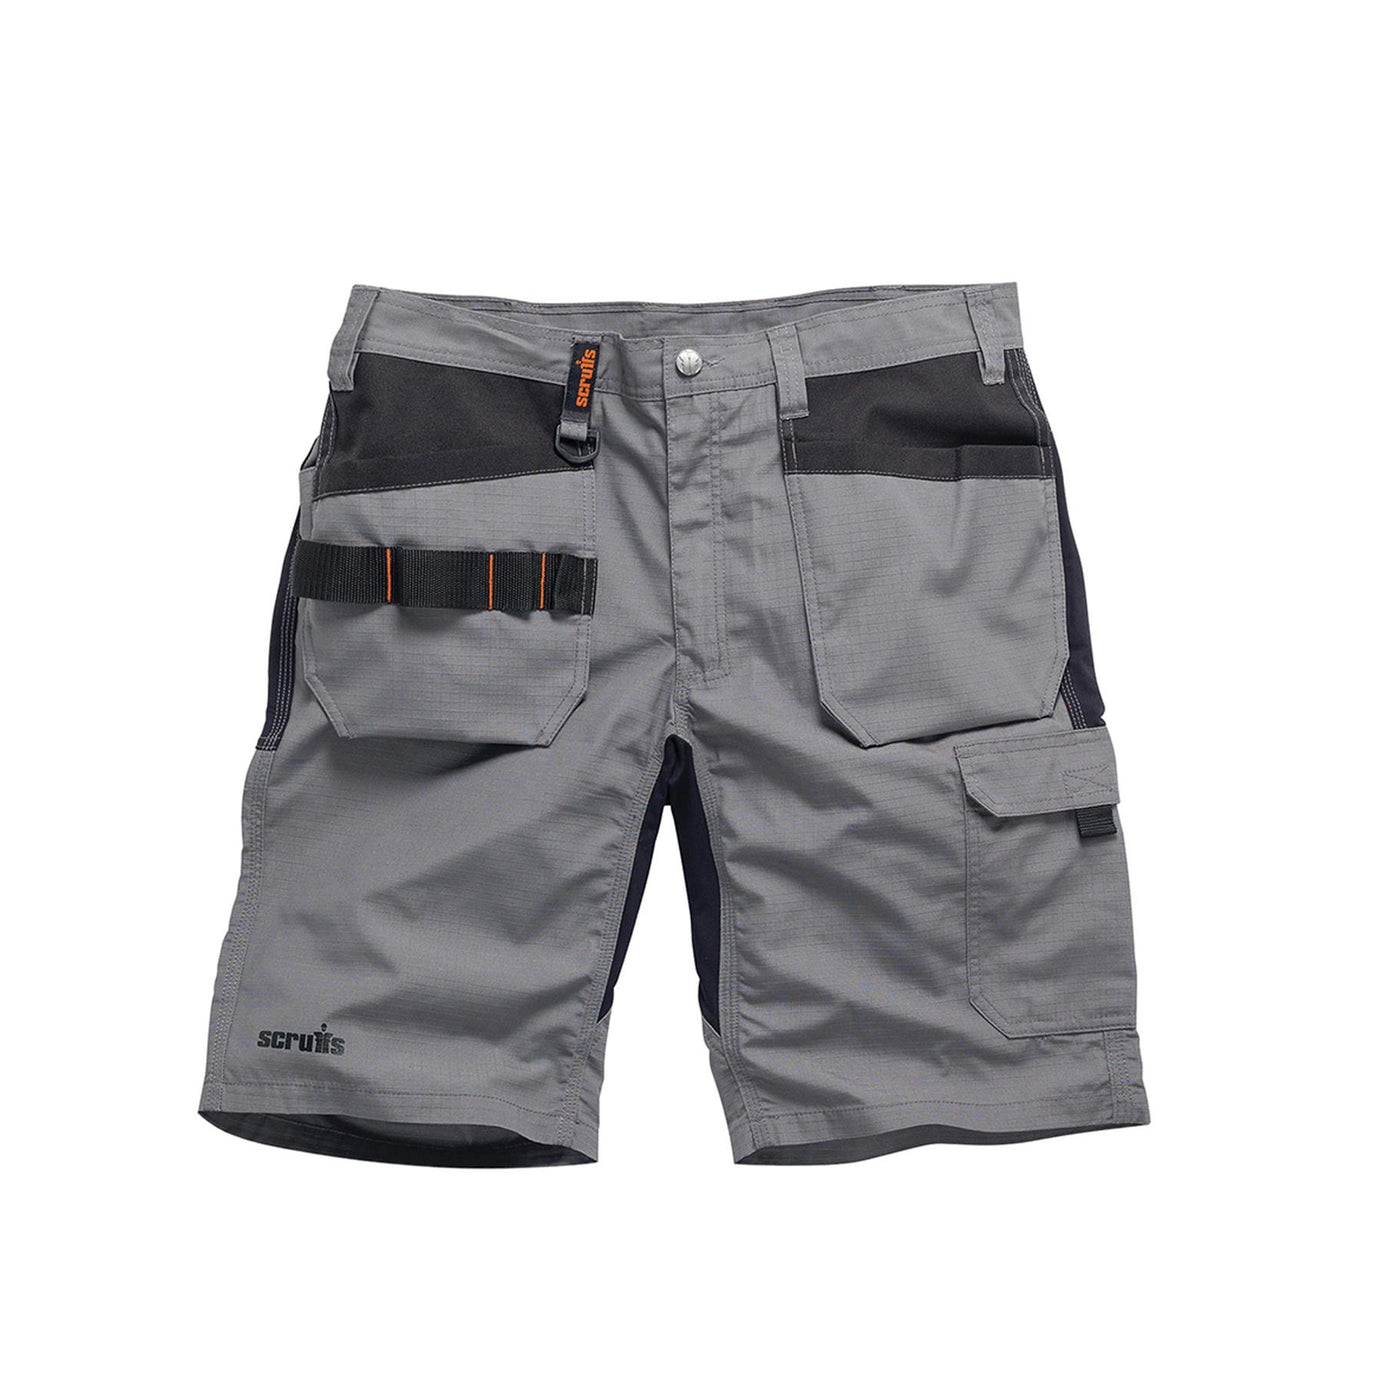 Scruffs Flex Holster Shorts Cargo Combat Pockets Hard Wearing Graphite 38 Waist